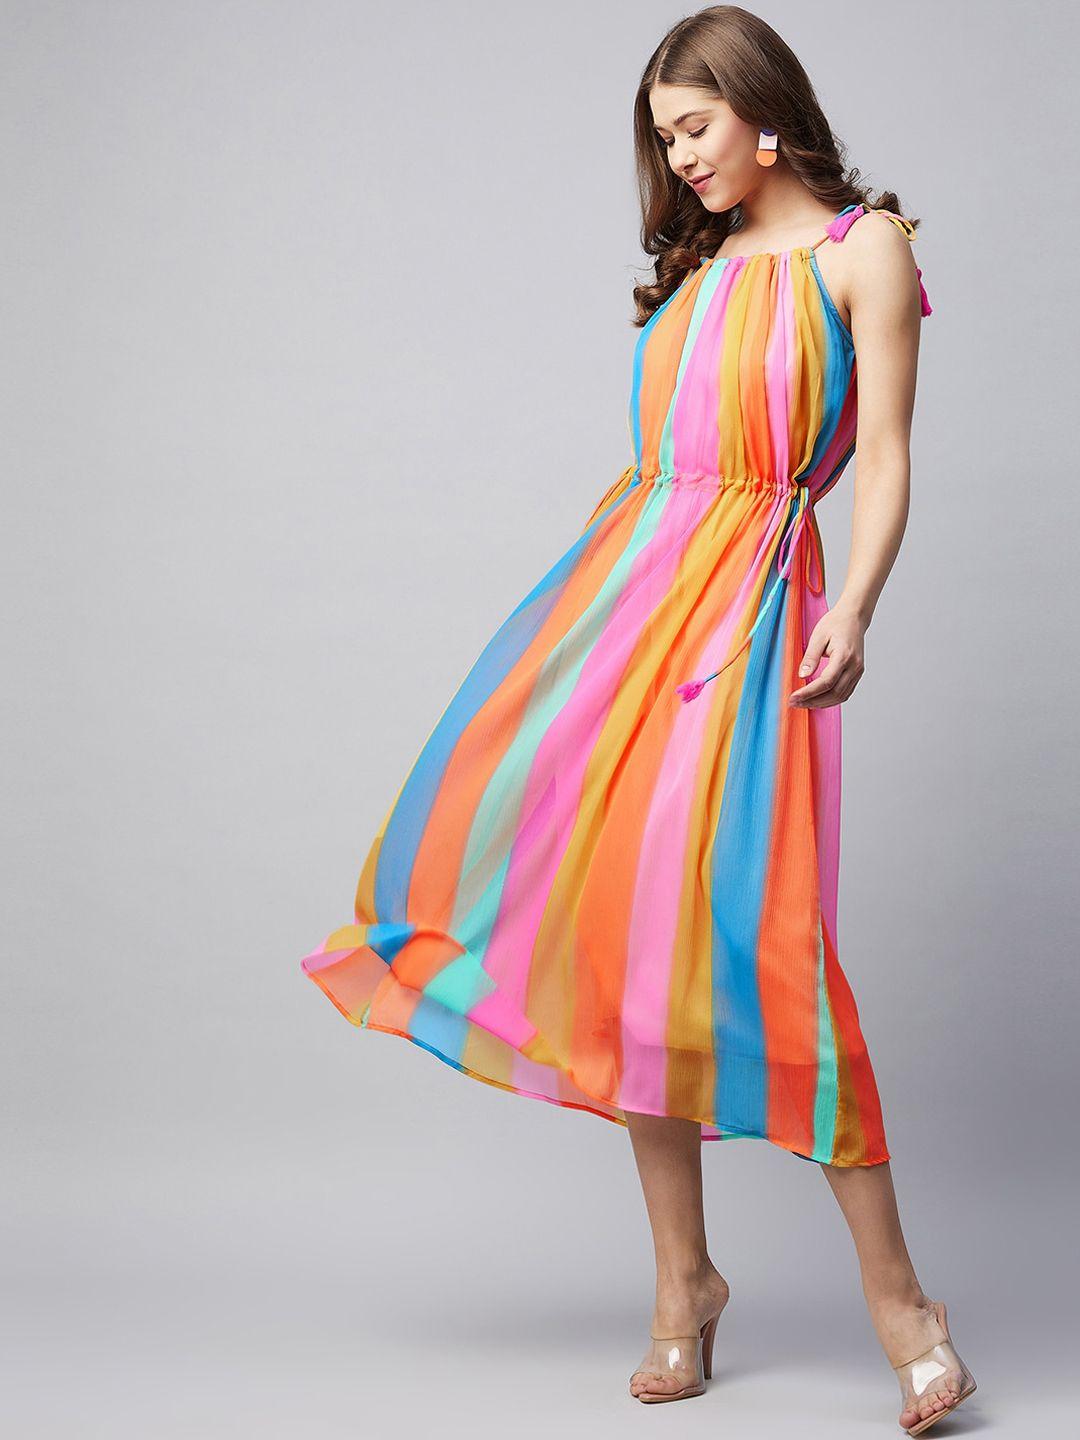 stylestone multicoloured striped chiffon a-line midi dress